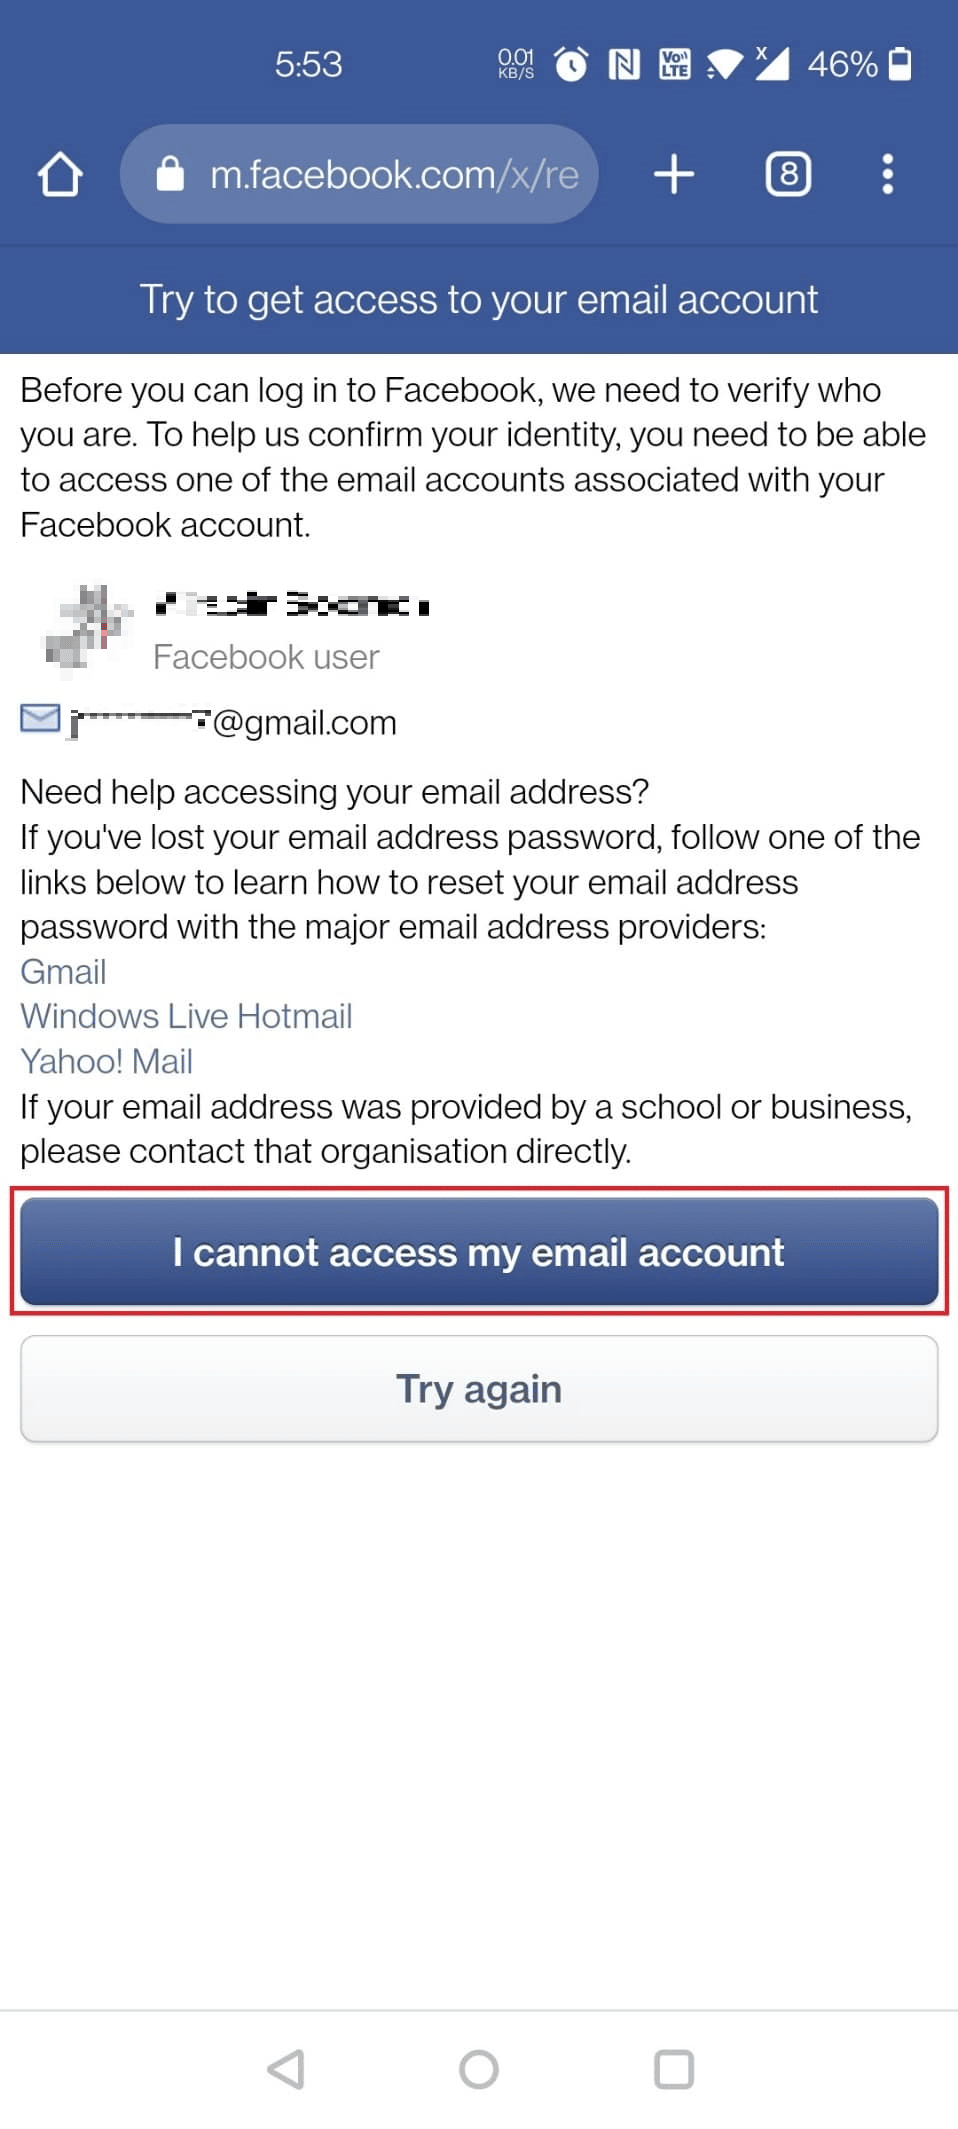 Нажмите на опцию «Я не могу получить доступ к своей учетной записи электронной почты».